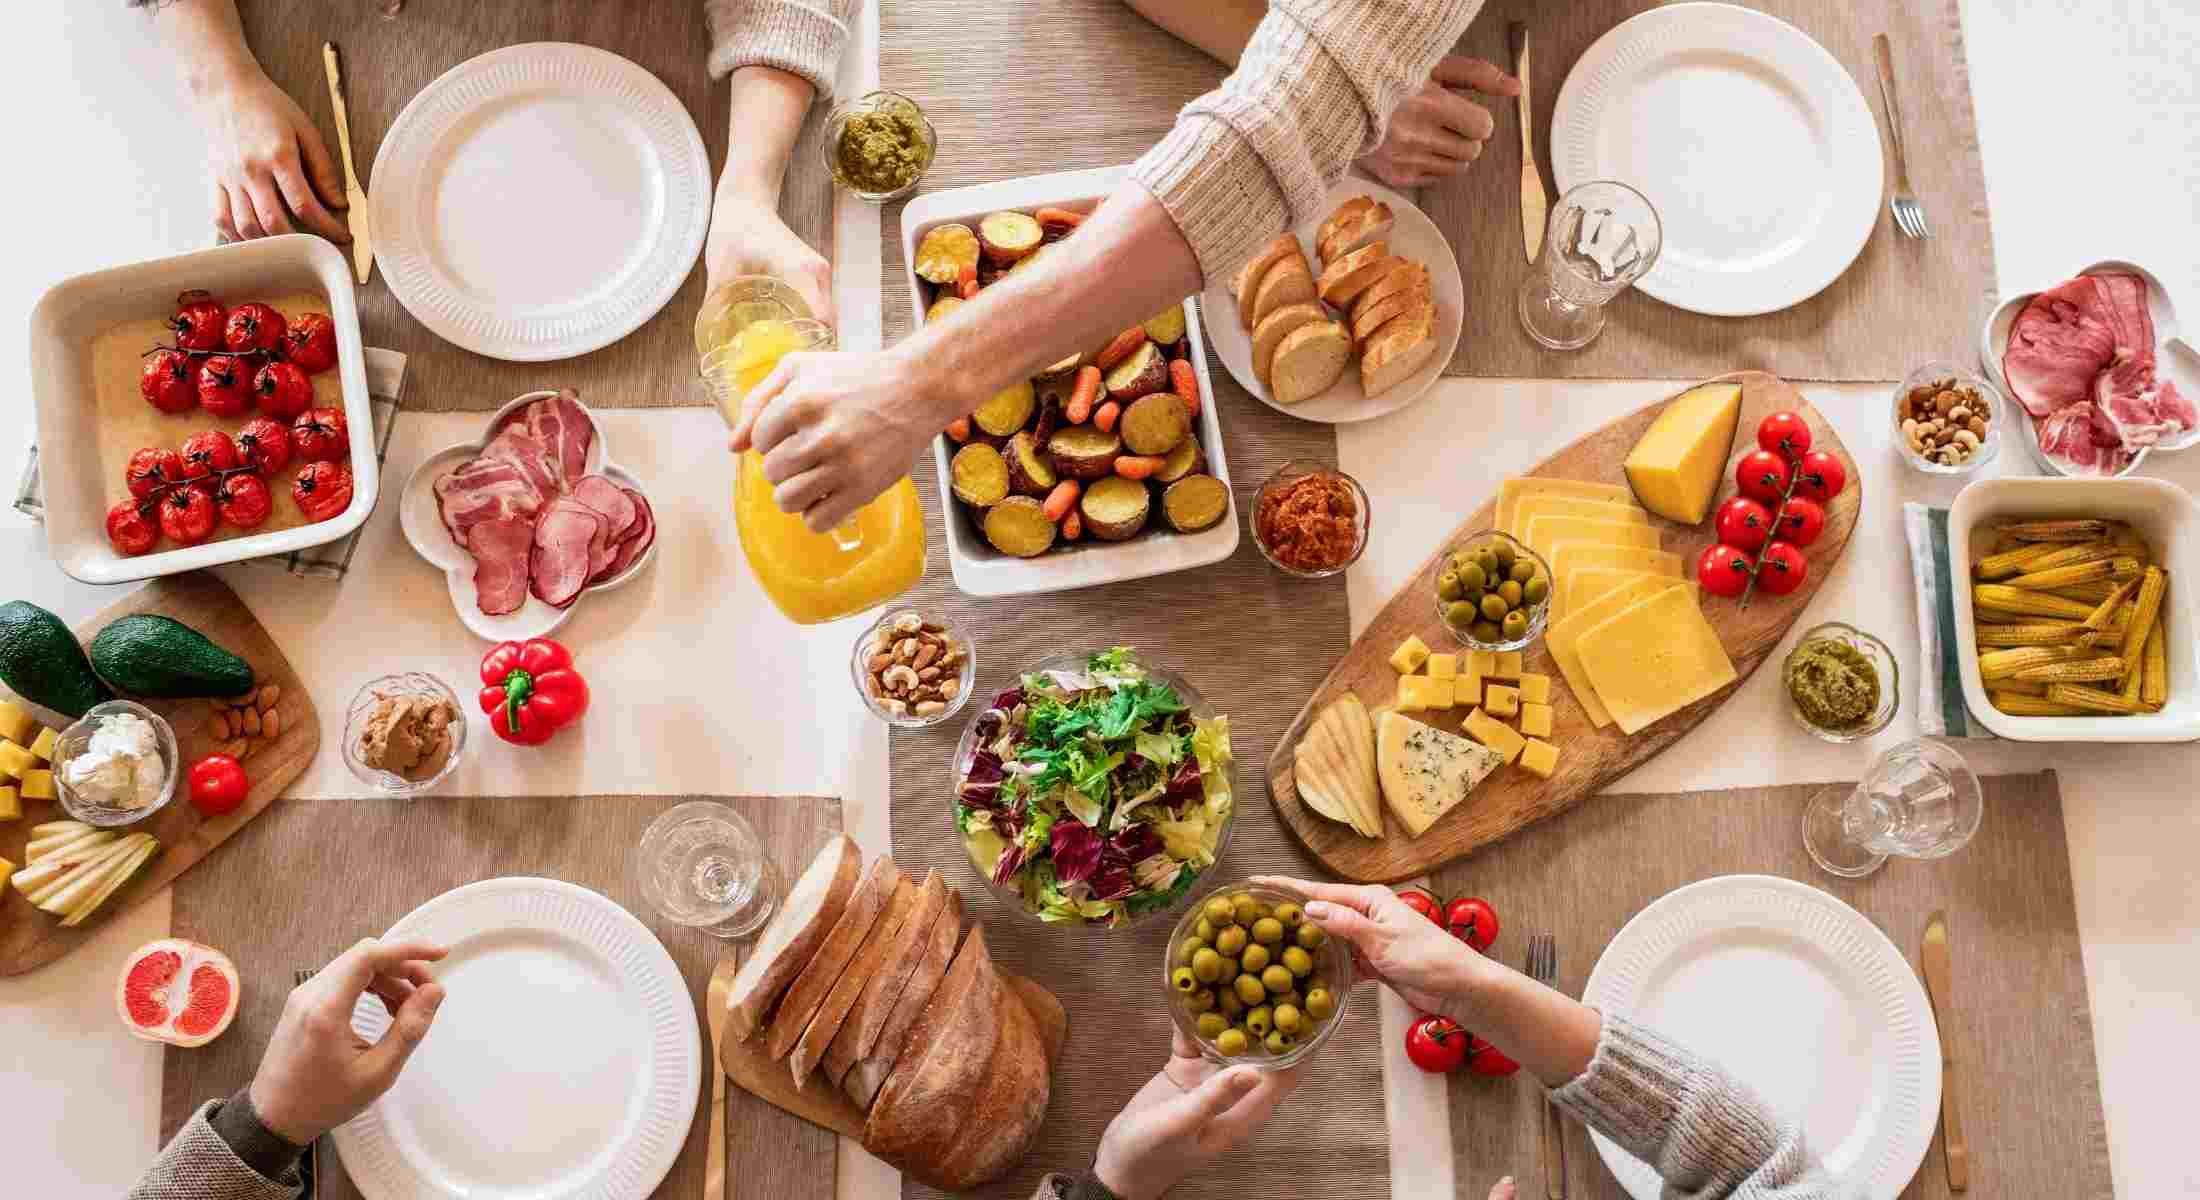 Cucina: tucco ciò che devi sapere per poter viverla in serenità - pranzo